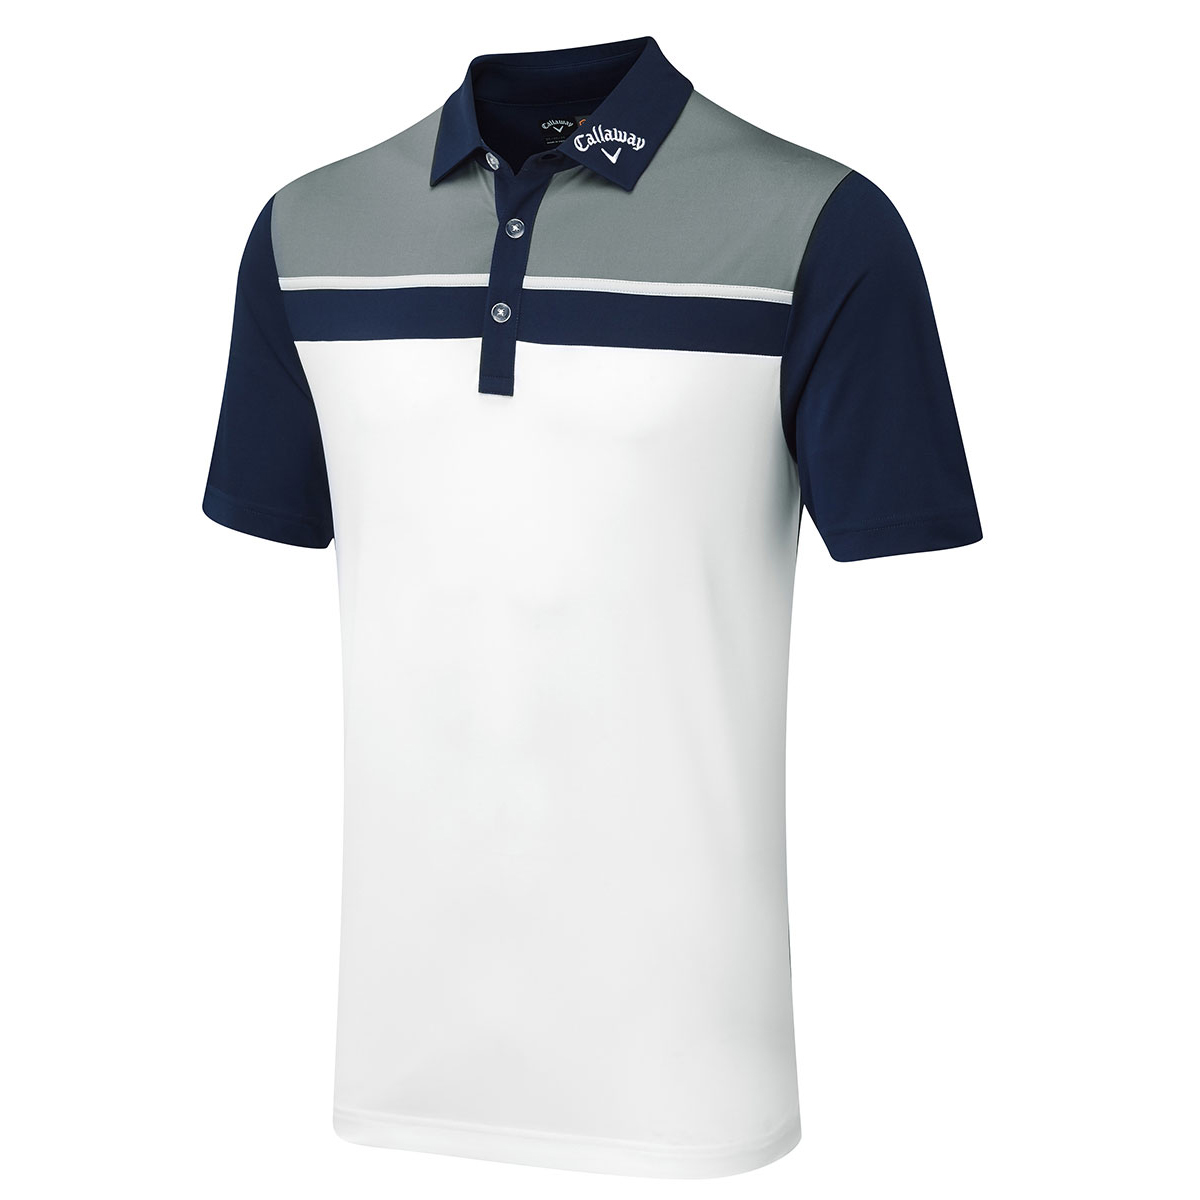 Callaway Golf Block Polo Shirt | Online Golf